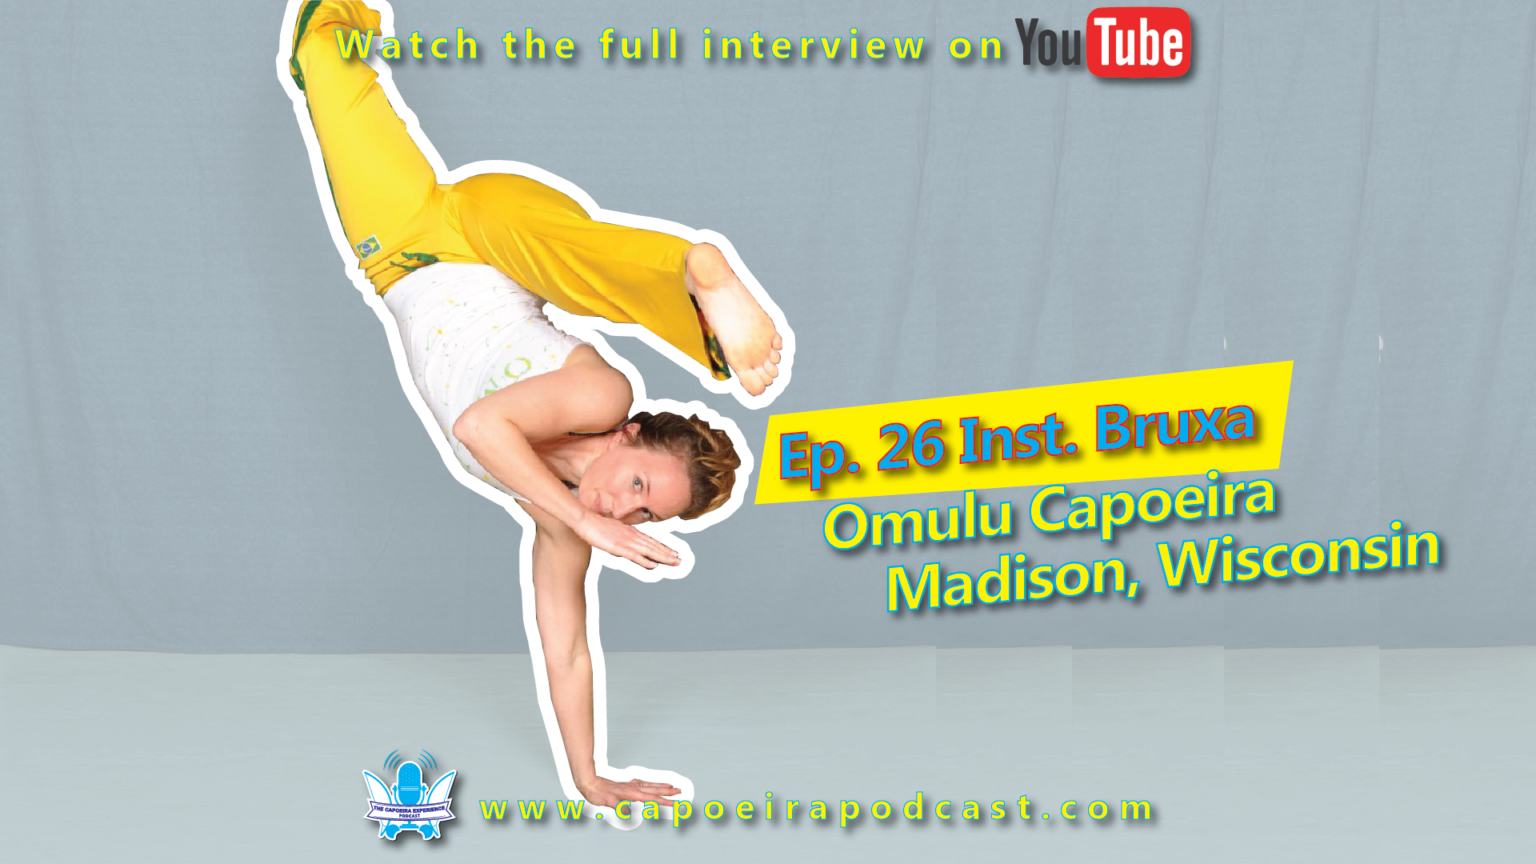 26 Graduada Bruxa - Omulu Capoeira - Madison, Wisconsin ...